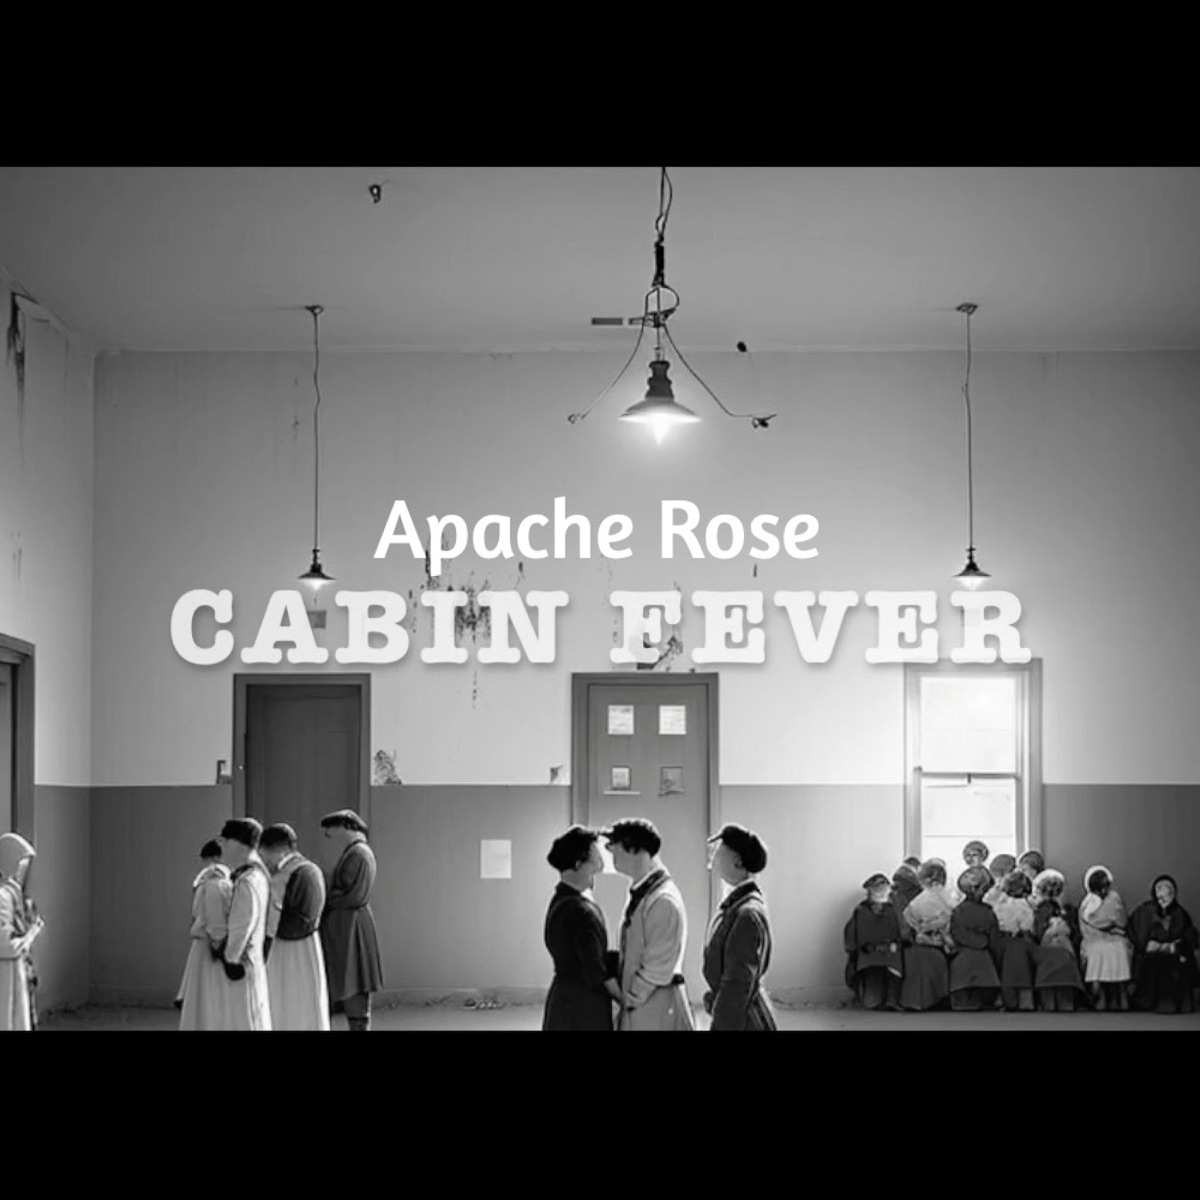 Apache Rose “Cabin Fever” single artwork